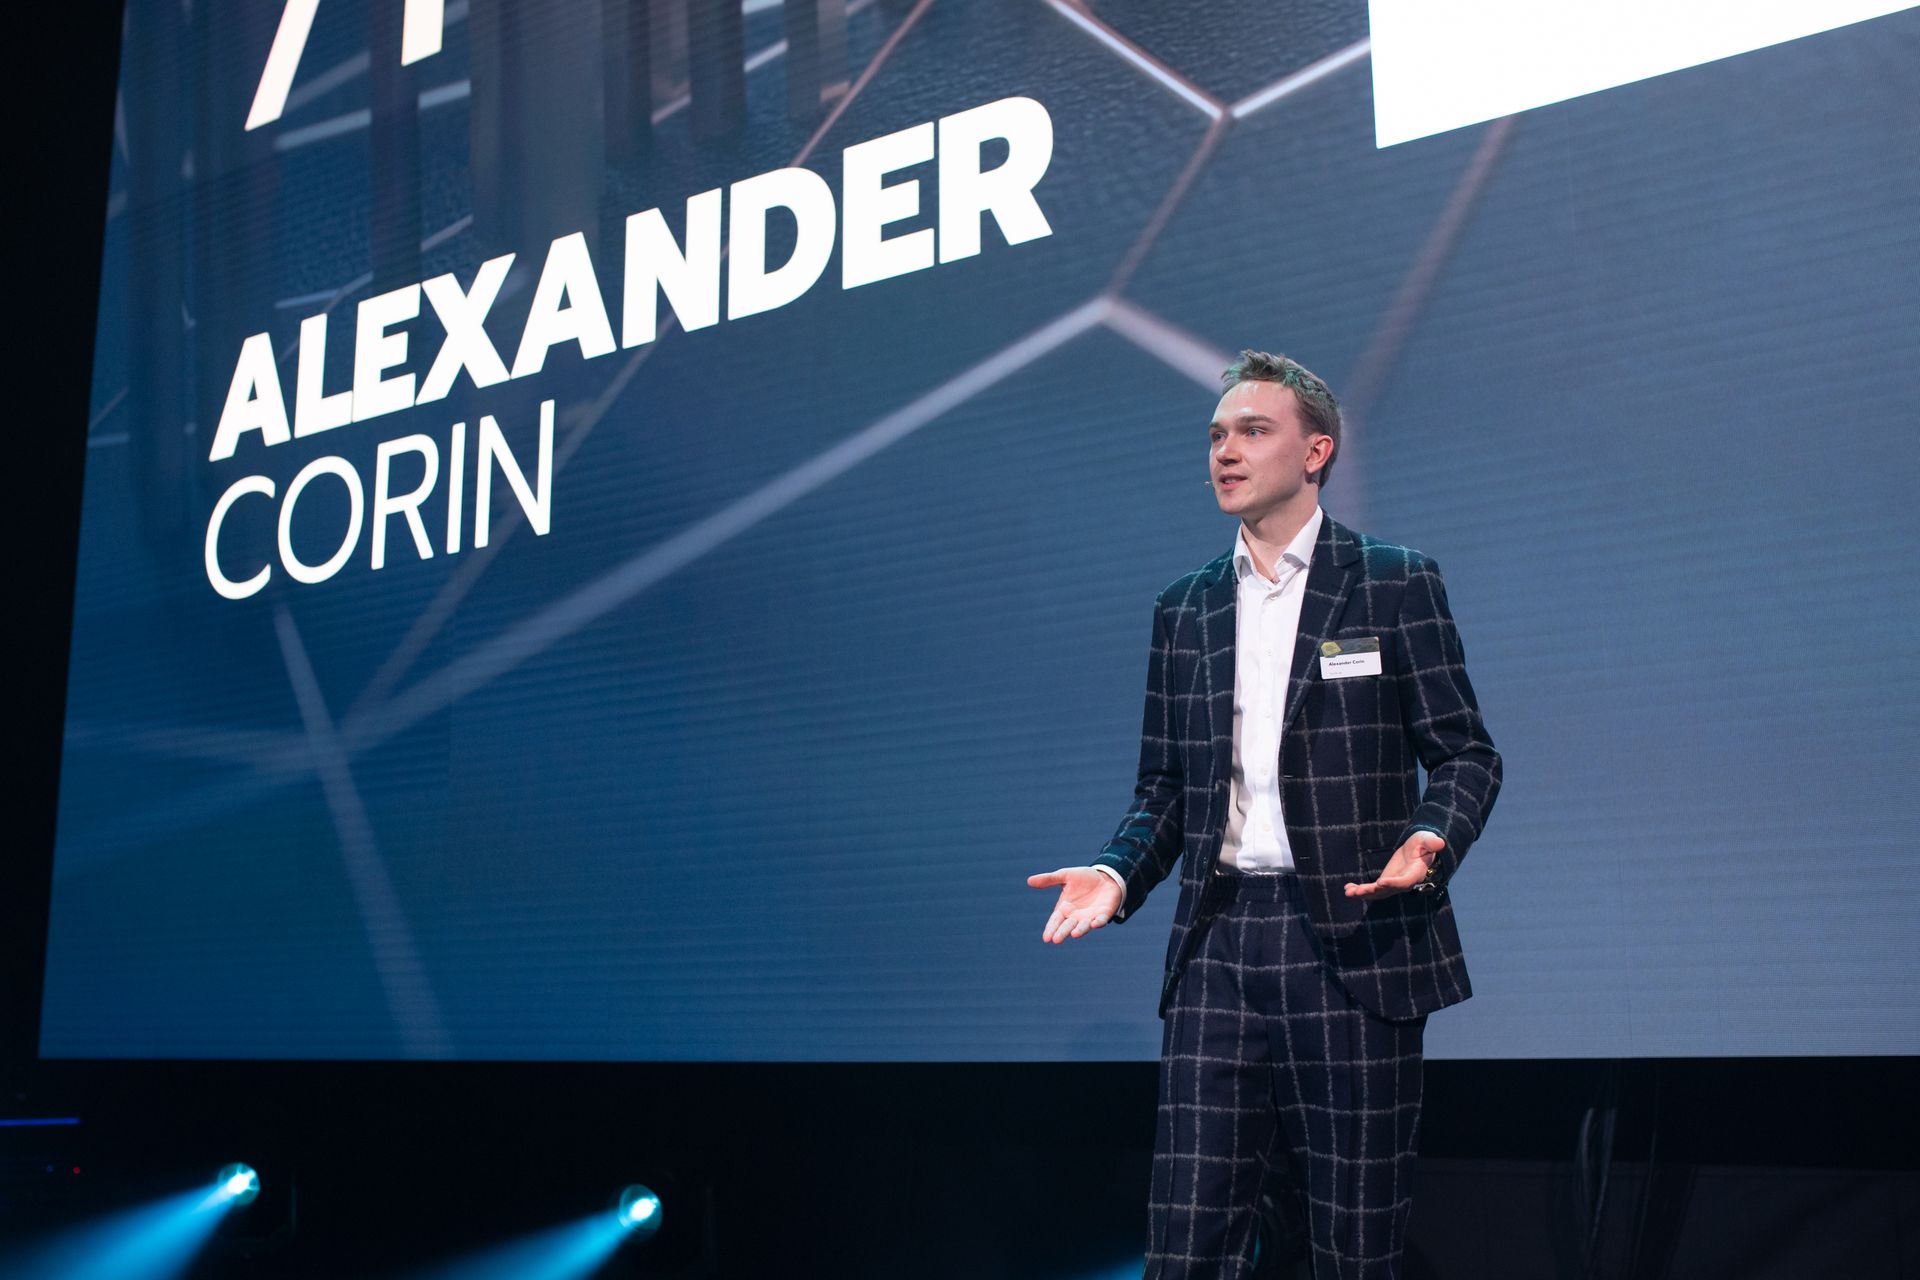 Alexander Corin, vincitore della classifica "Nextgen Hero", alla premiazione dei "Digital Economy Award" della Svizzera